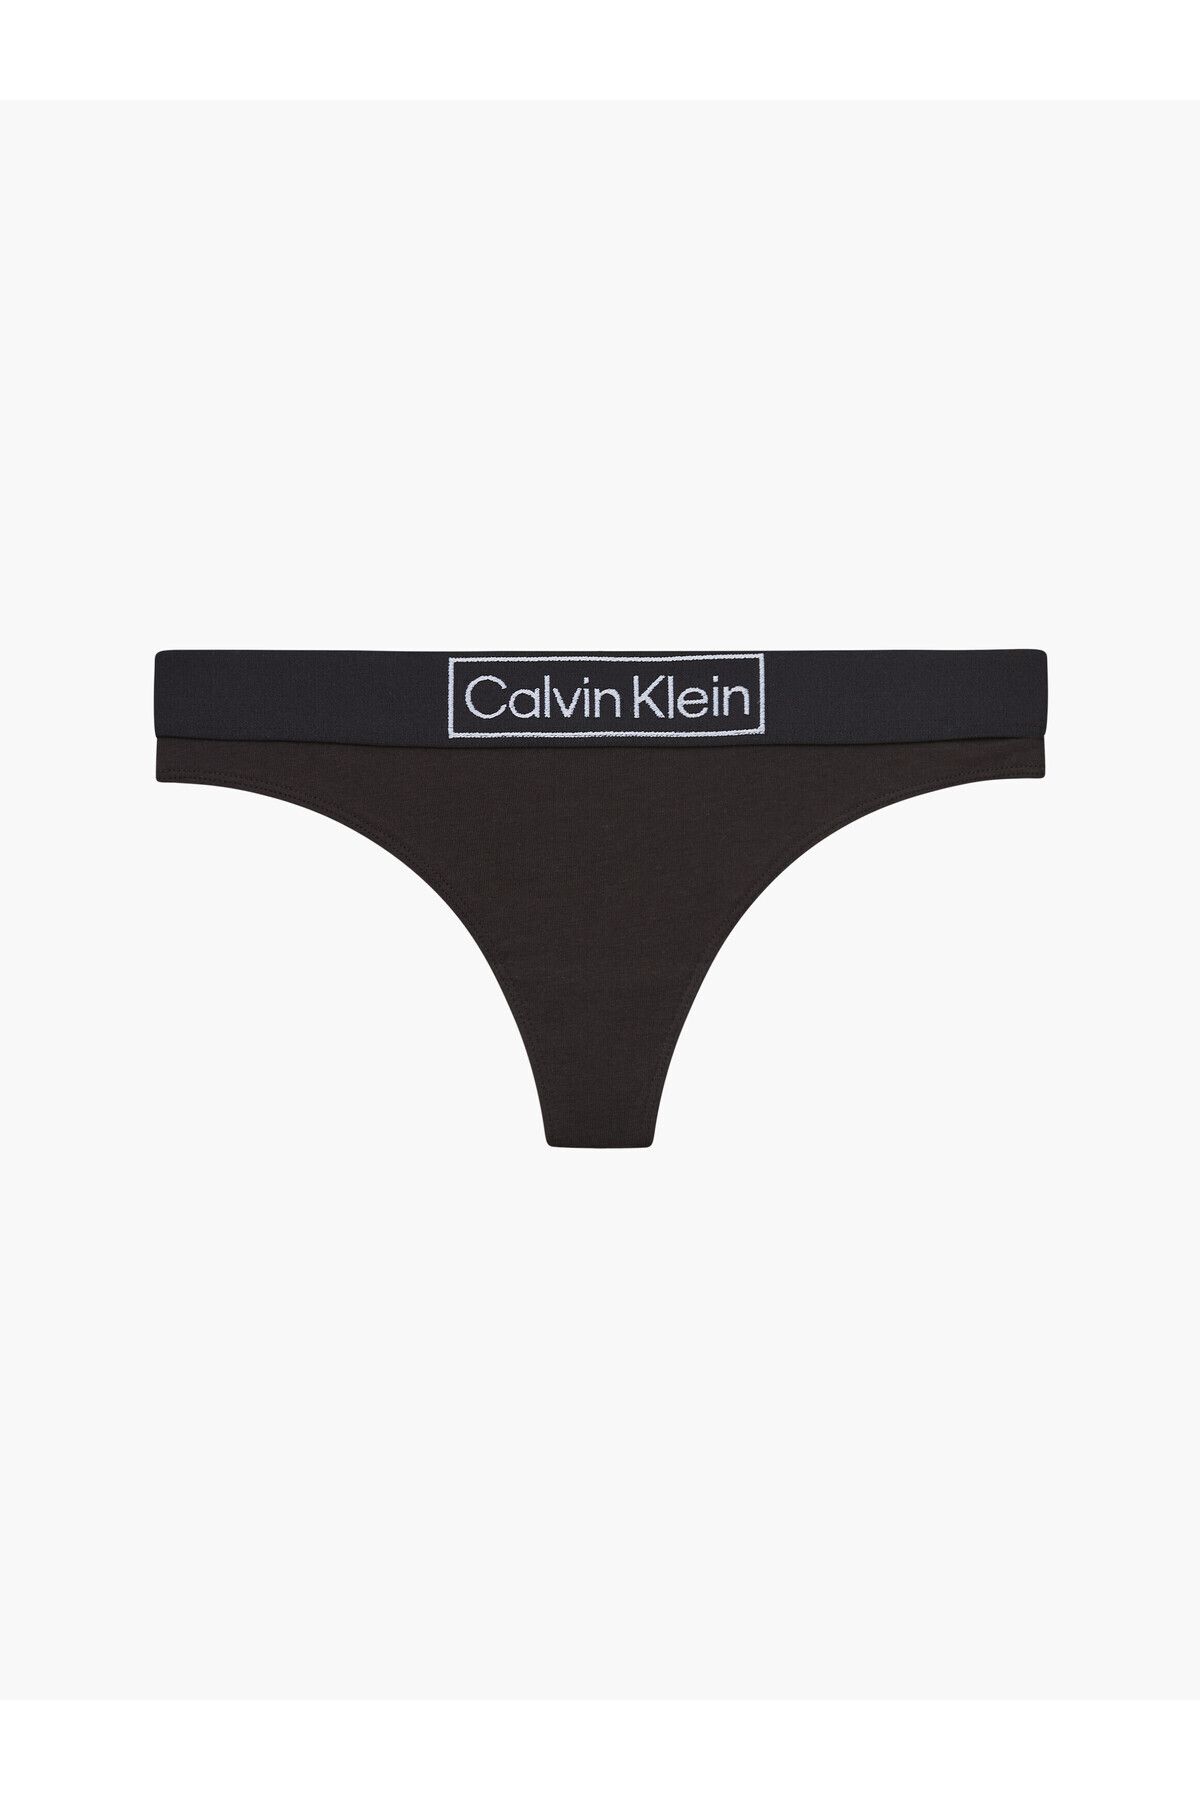 Calvin Klein Kadın Marka Logolu Elastik Bantlı Günlük Kullanıma Uygun Siyah Külot 000qf6774e-ub1